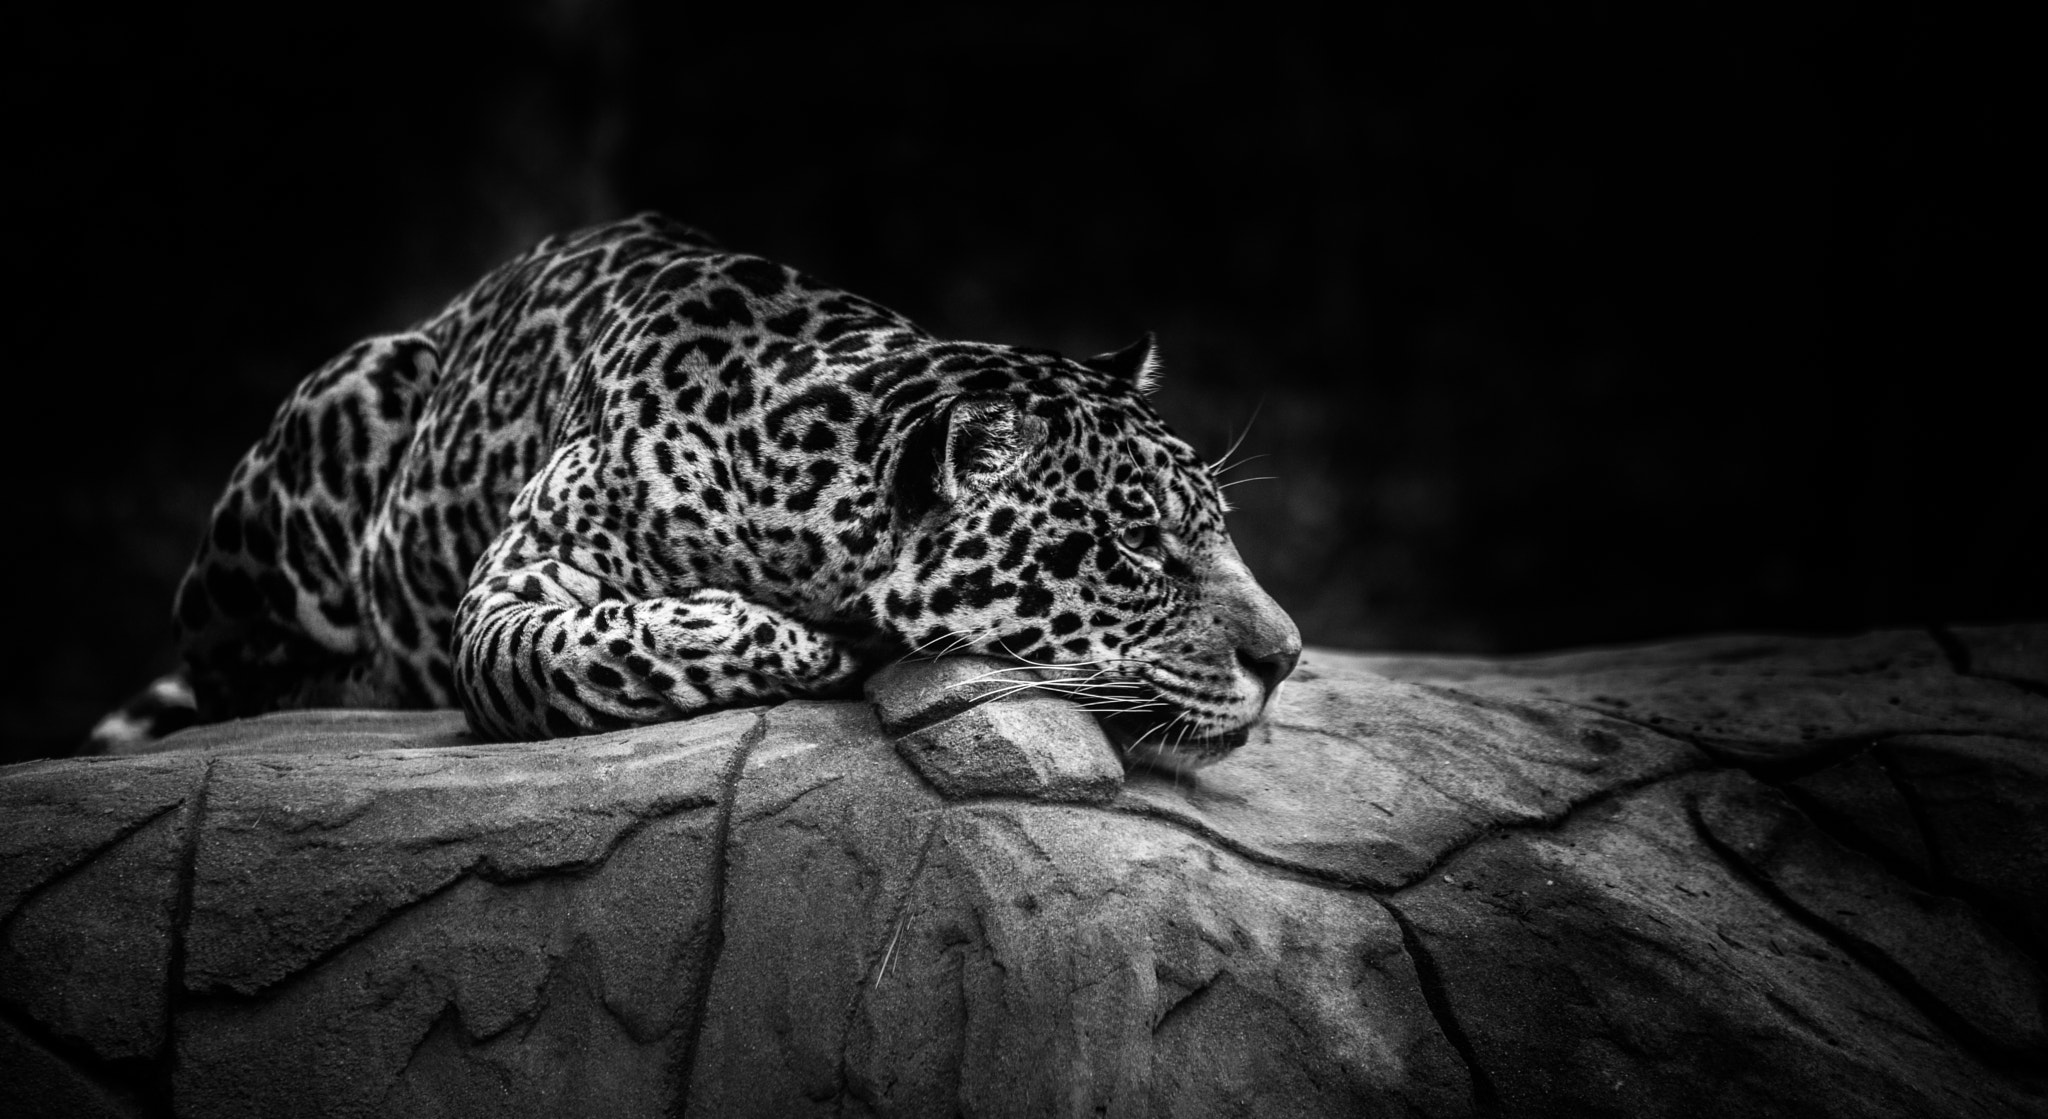 Nikon D800 sample photo. Jaguar photography